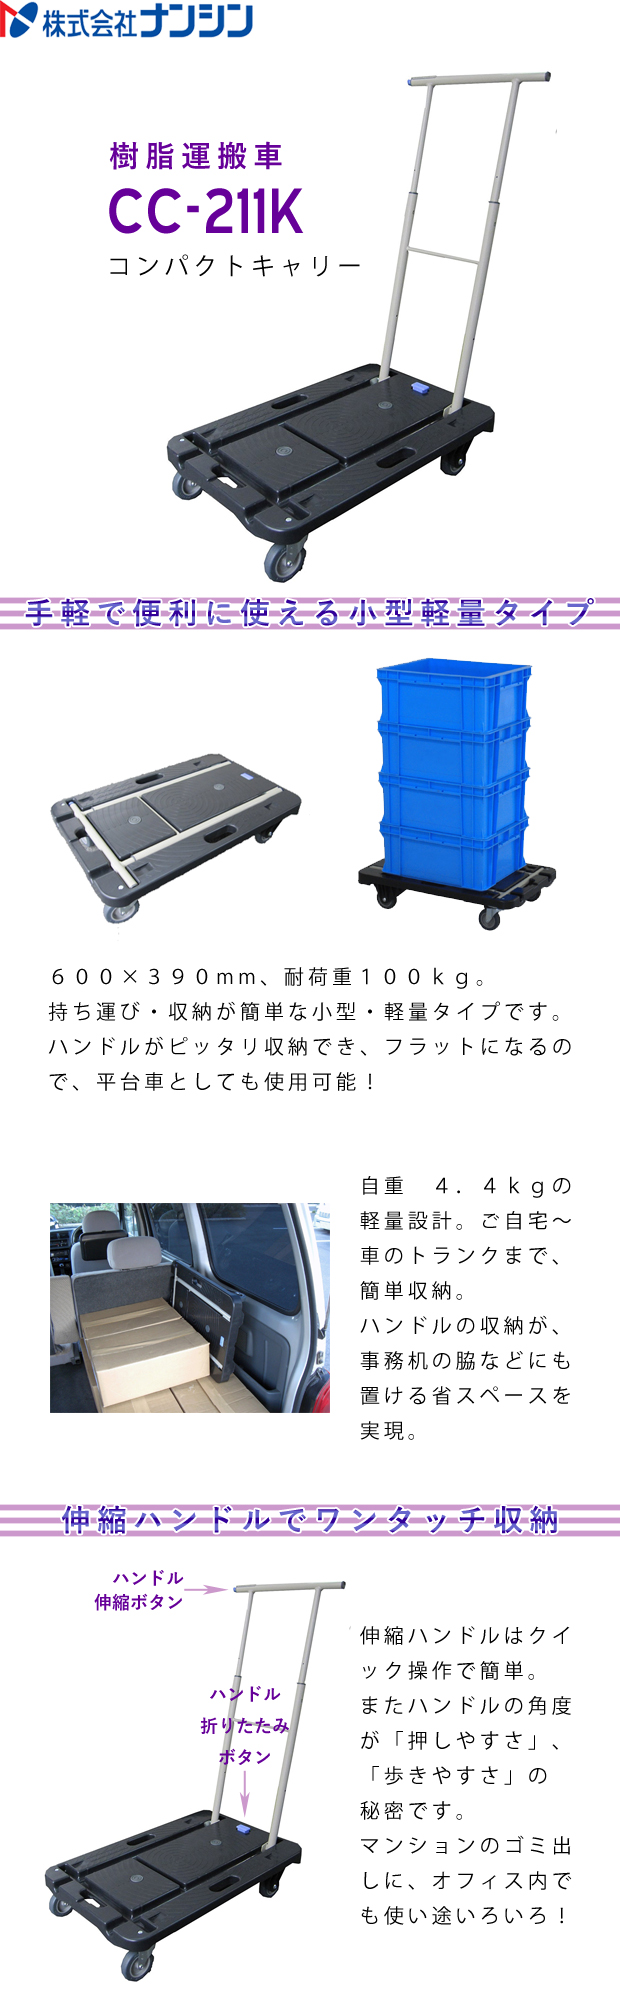 ナンシン 樹脂運搬車 CC-211K 電動工具・エアー工具・大工道具（作業